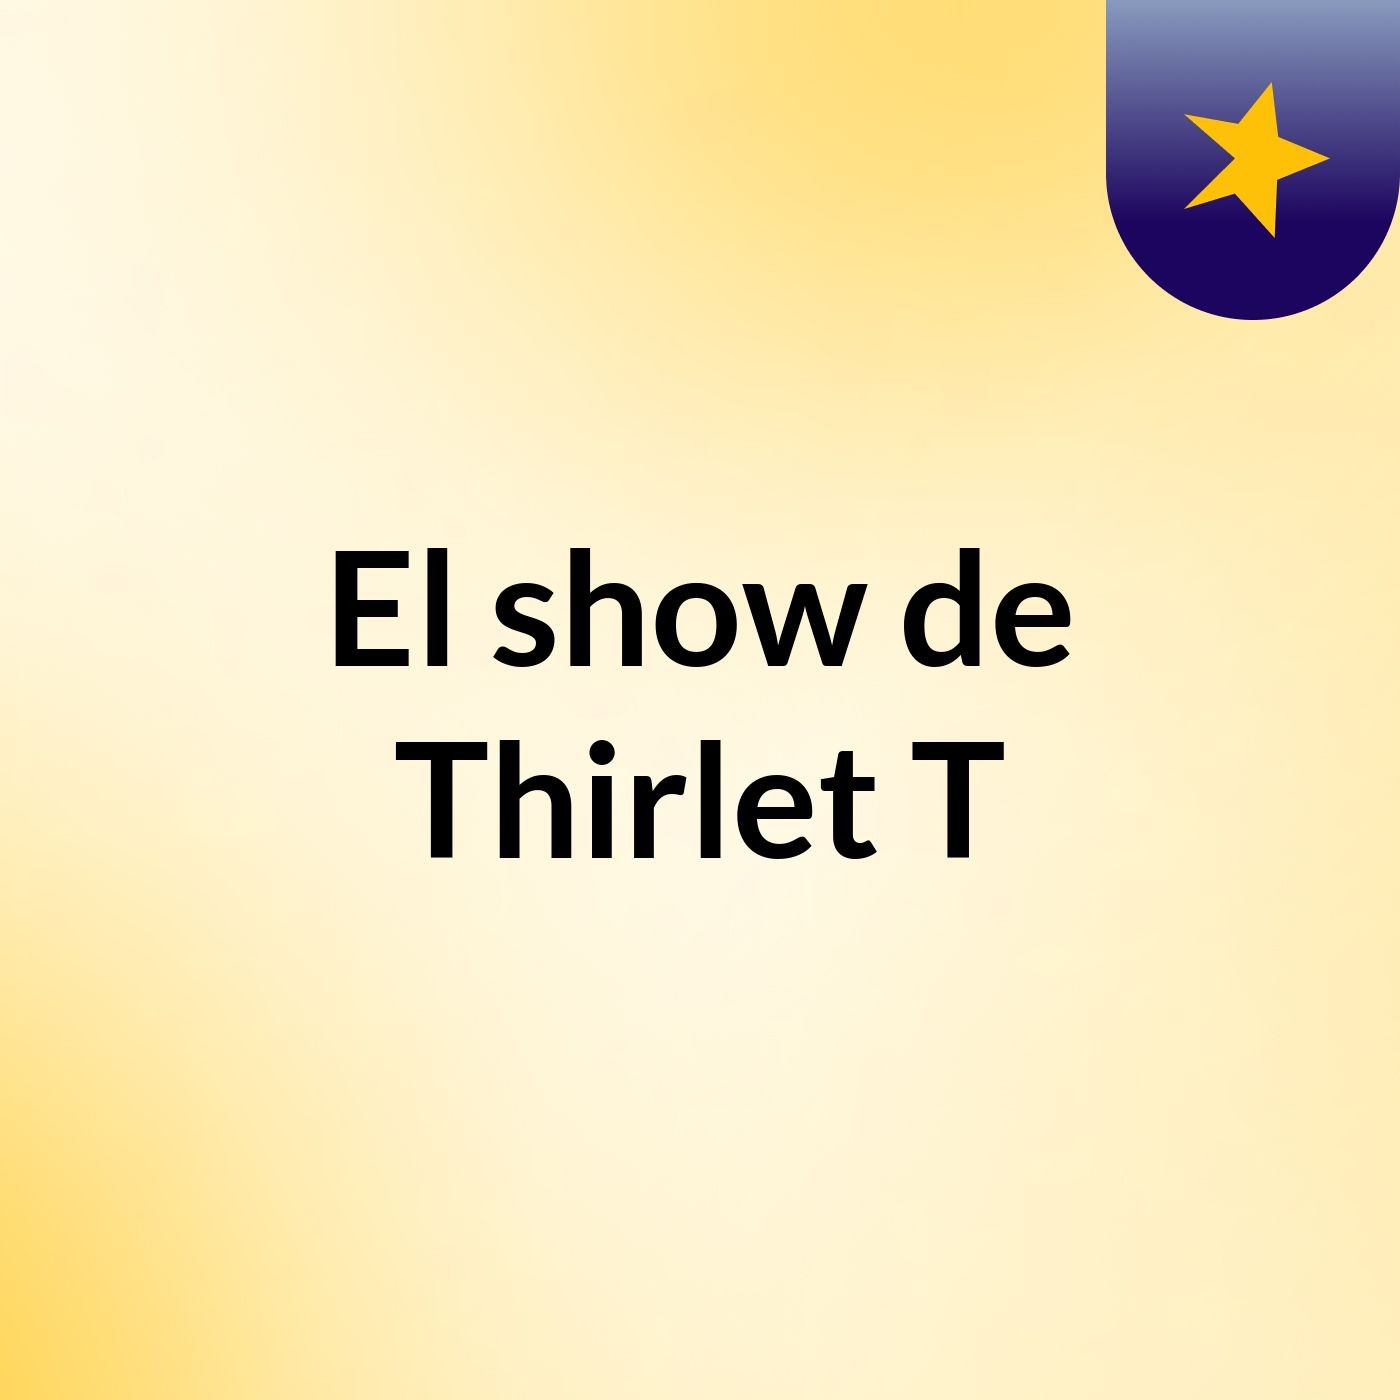 El show de Thirlet T